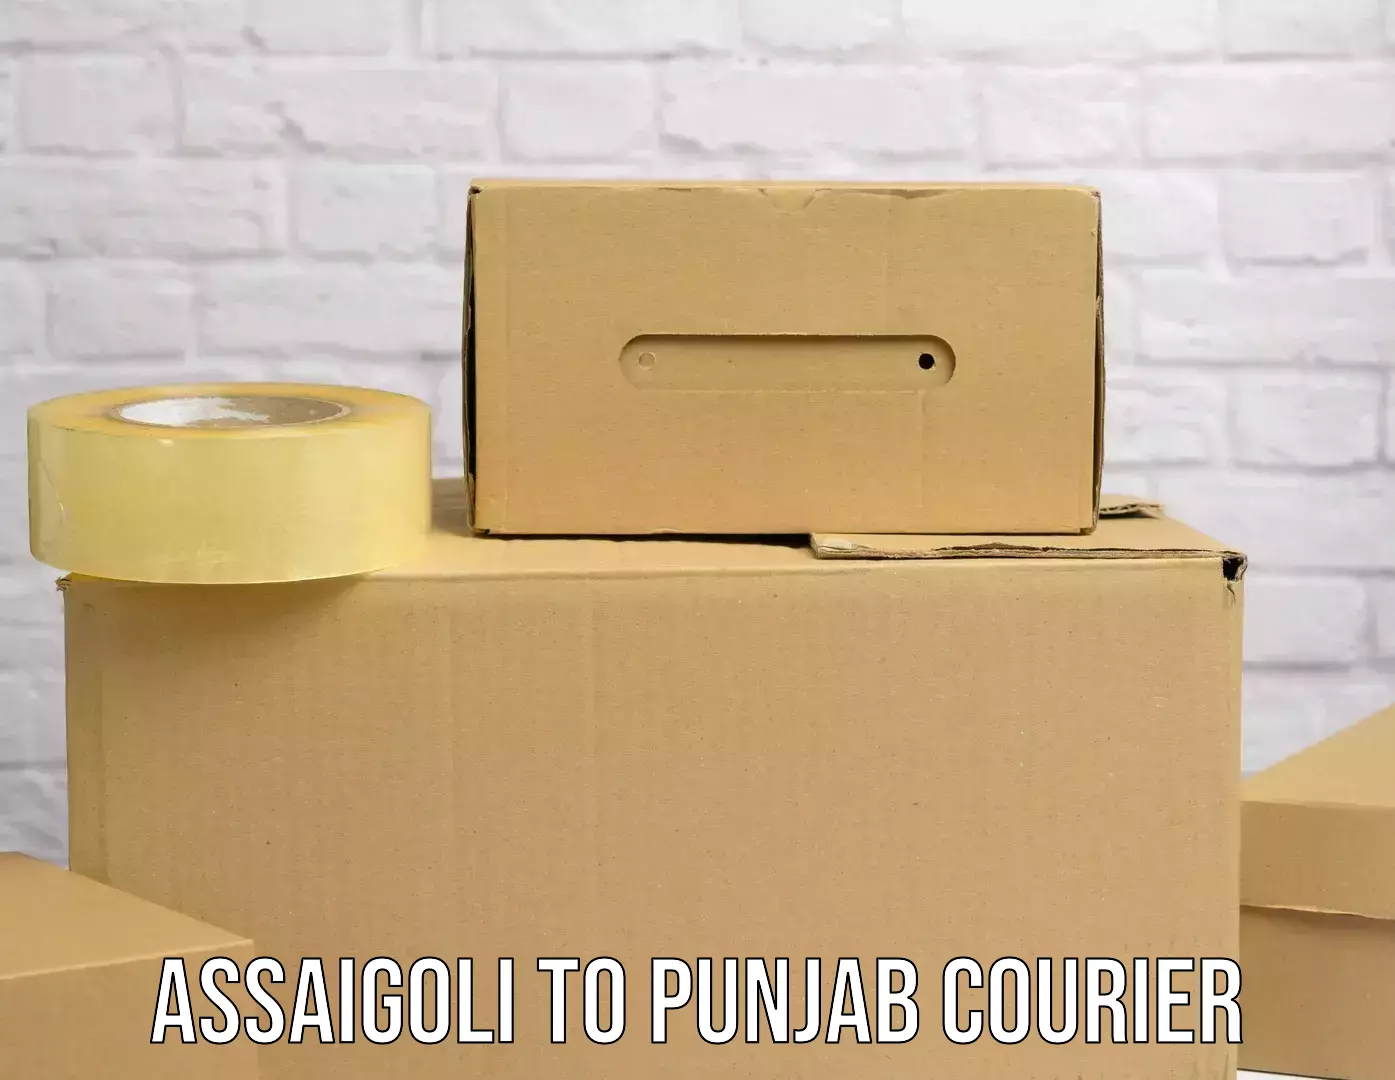 Express courier facilities Assaigoli to Sunam